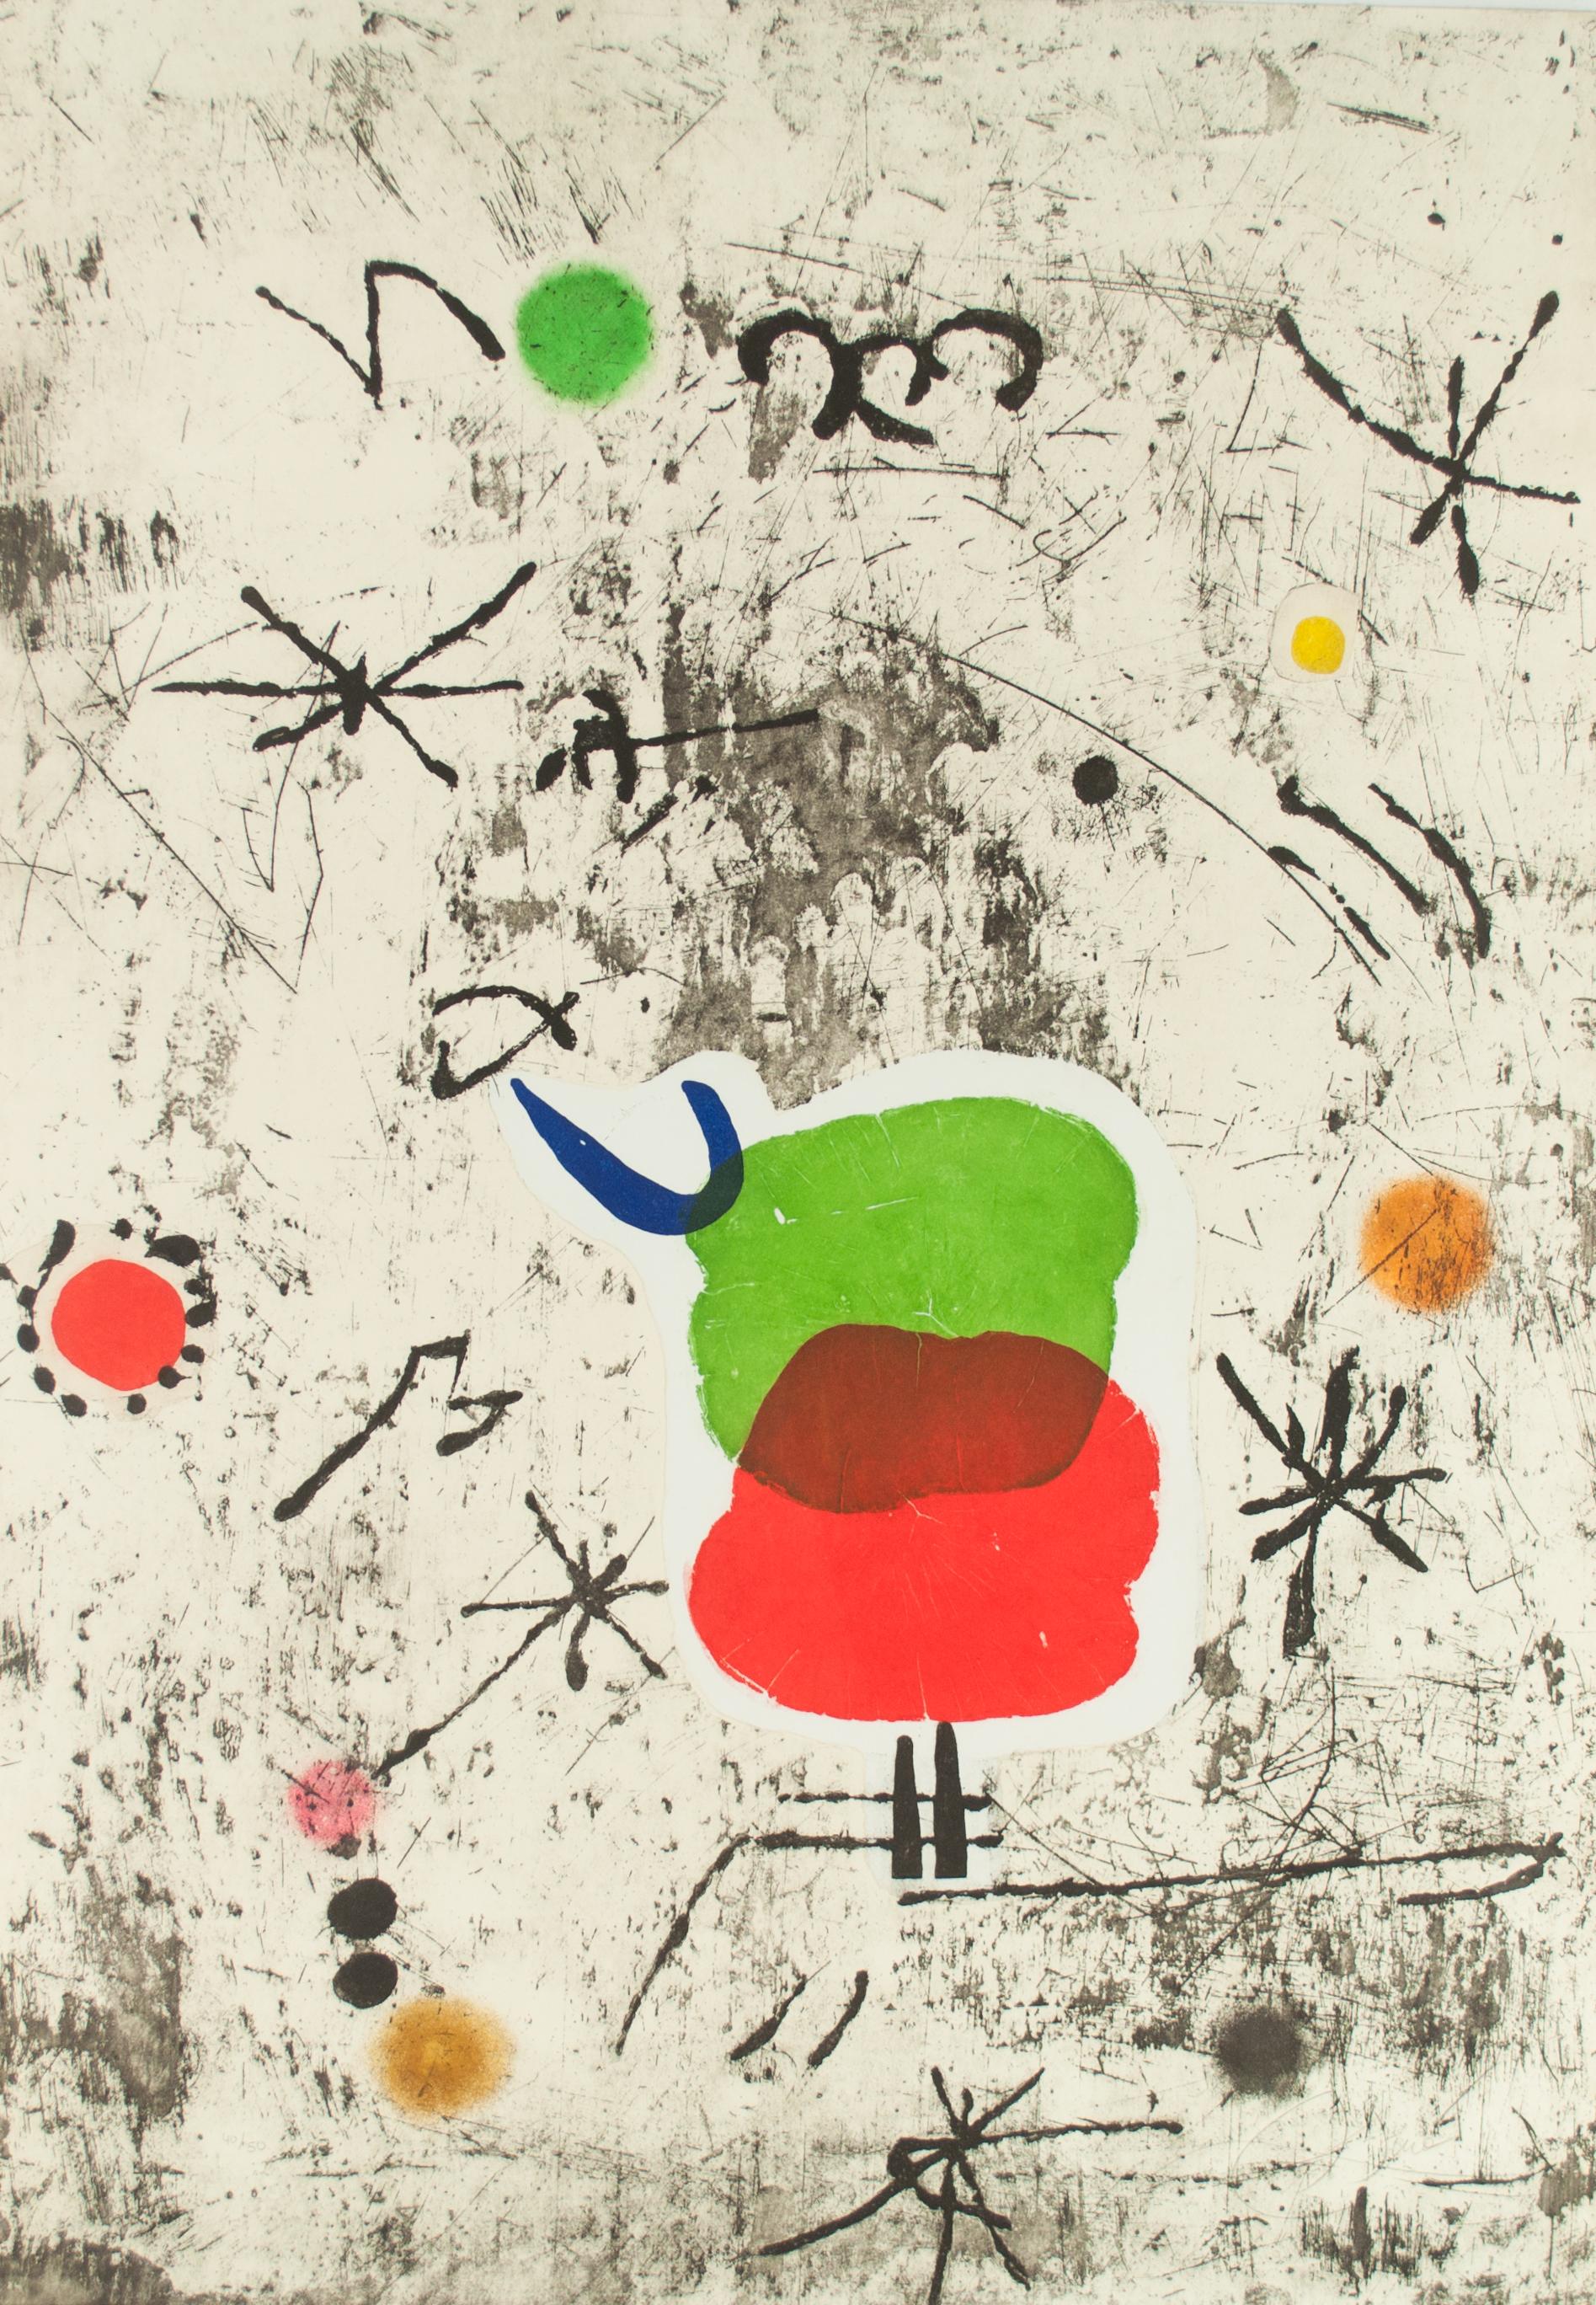 Abstract Print Joan Miró - Personnage I Estel I